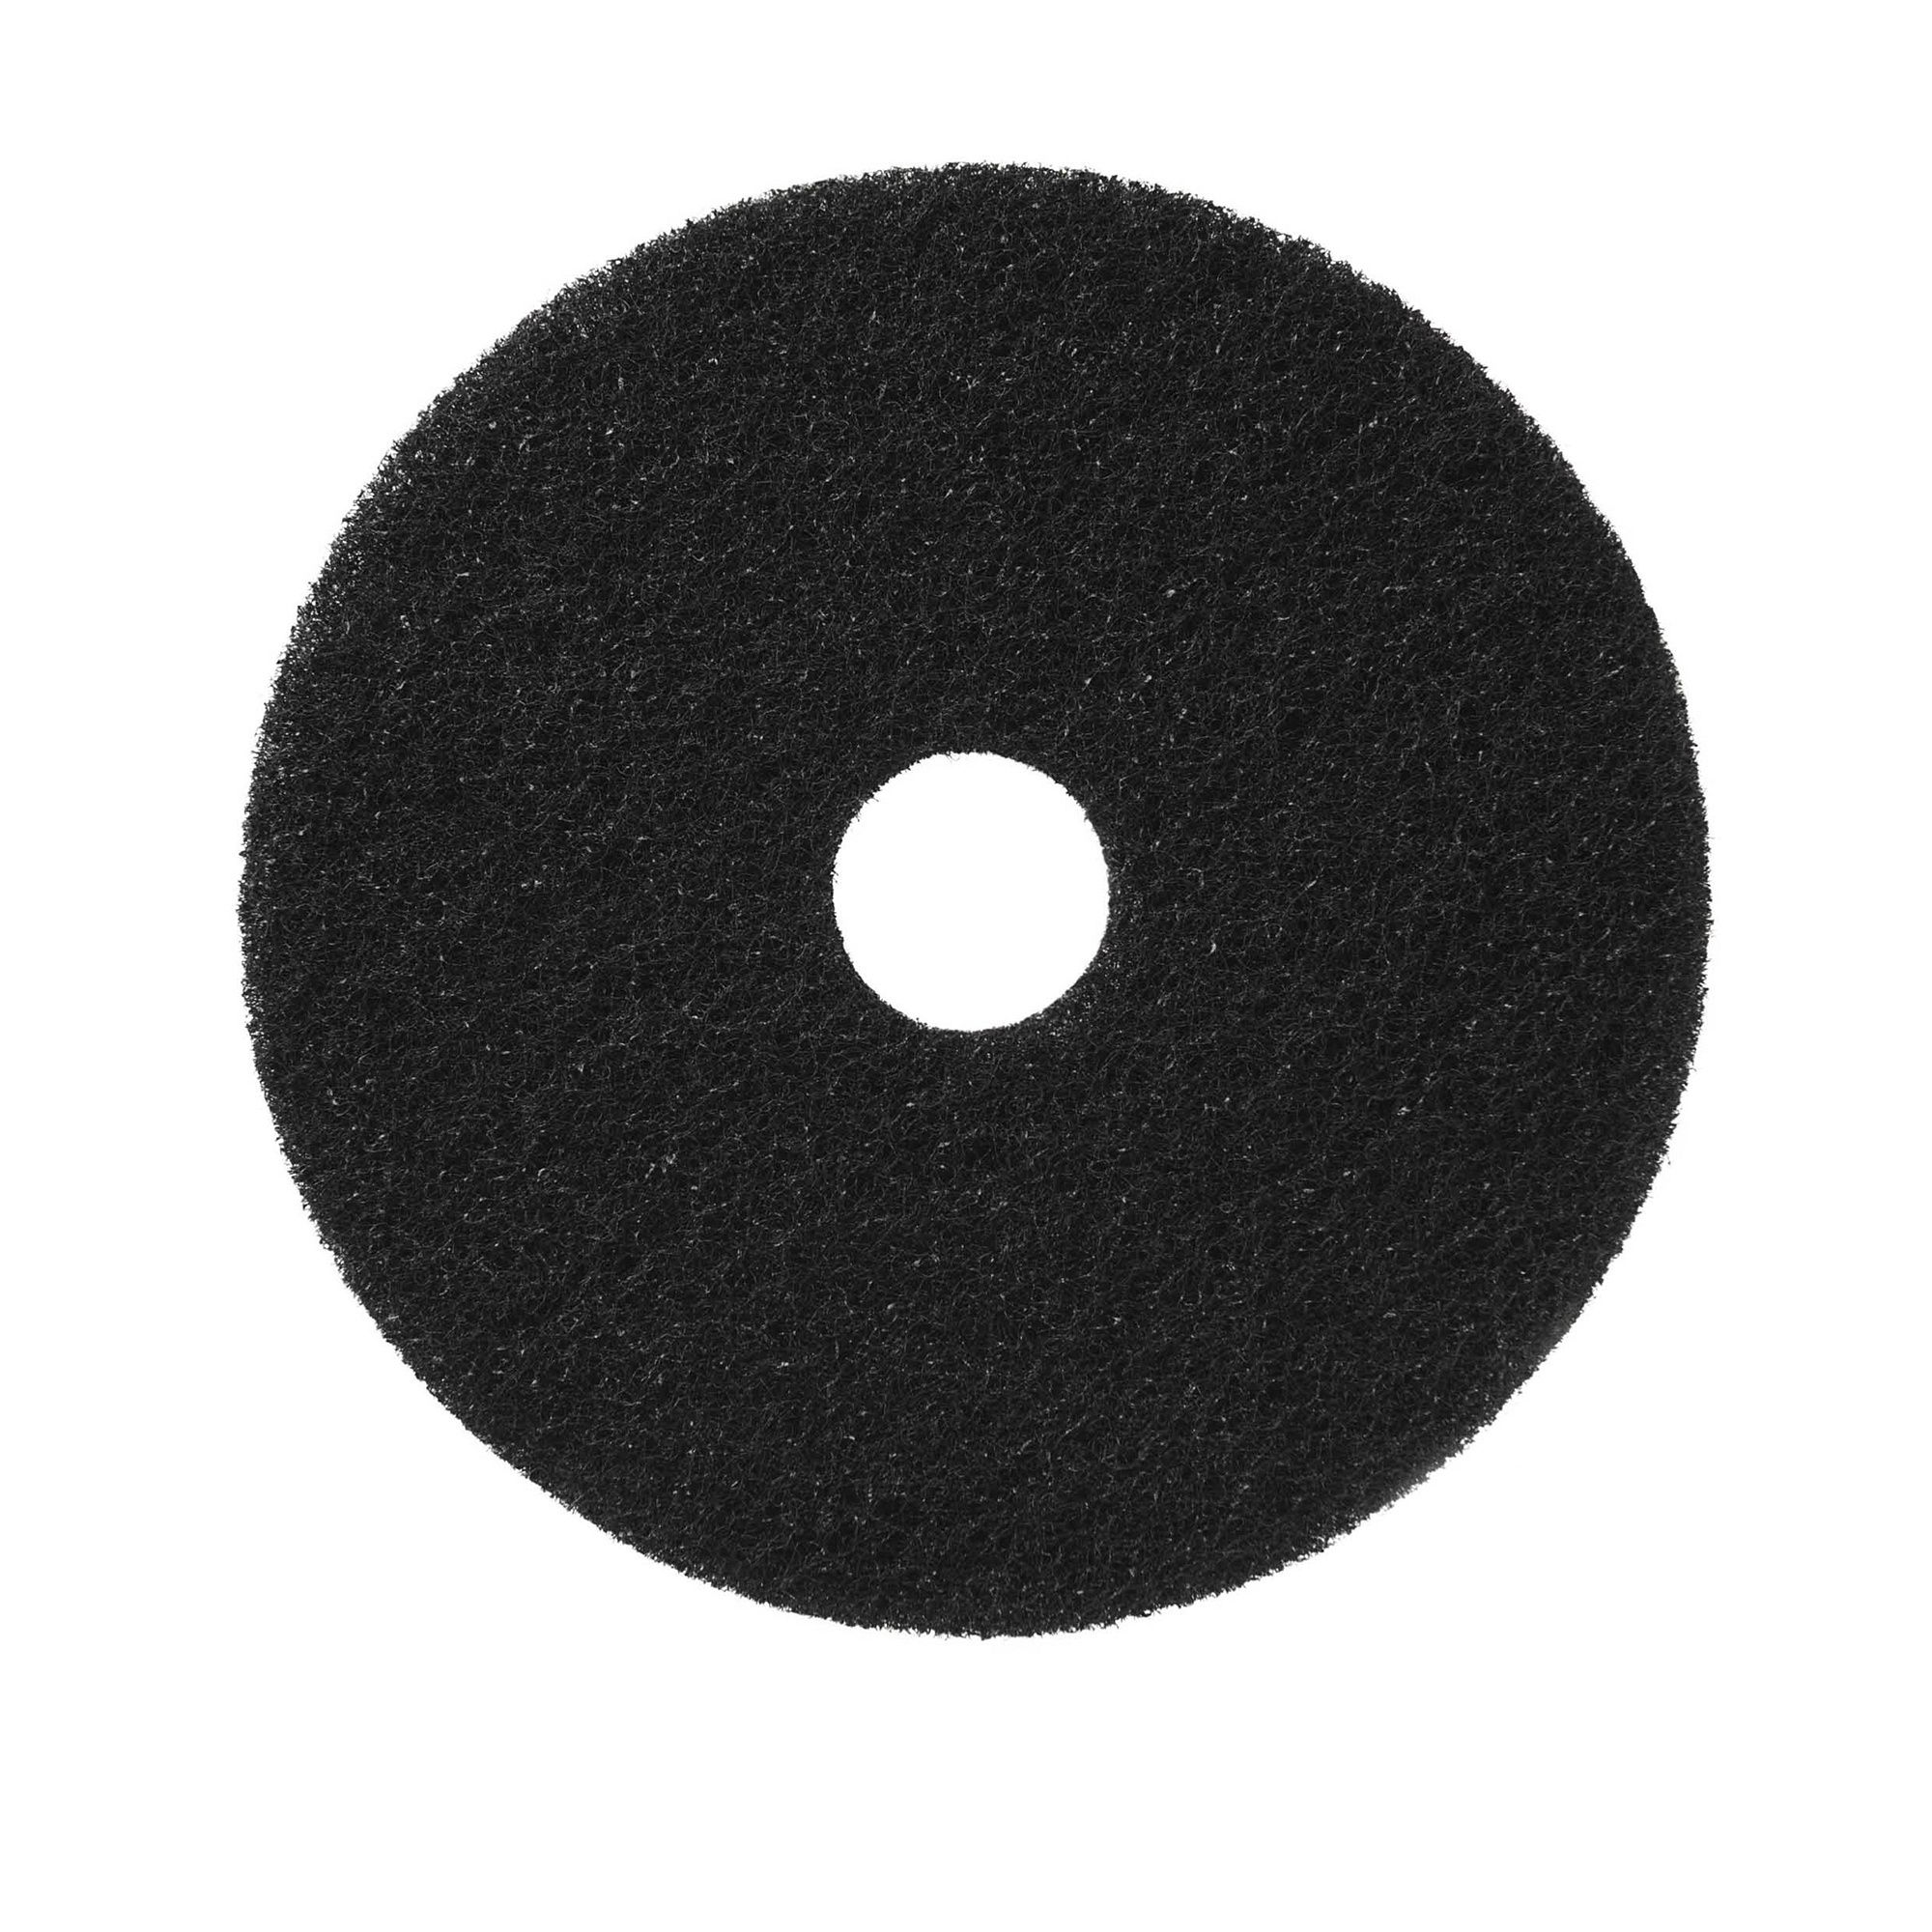 NuPad zwart (strippen met chemie), per 5 stuks, 14 inch / 355 mm